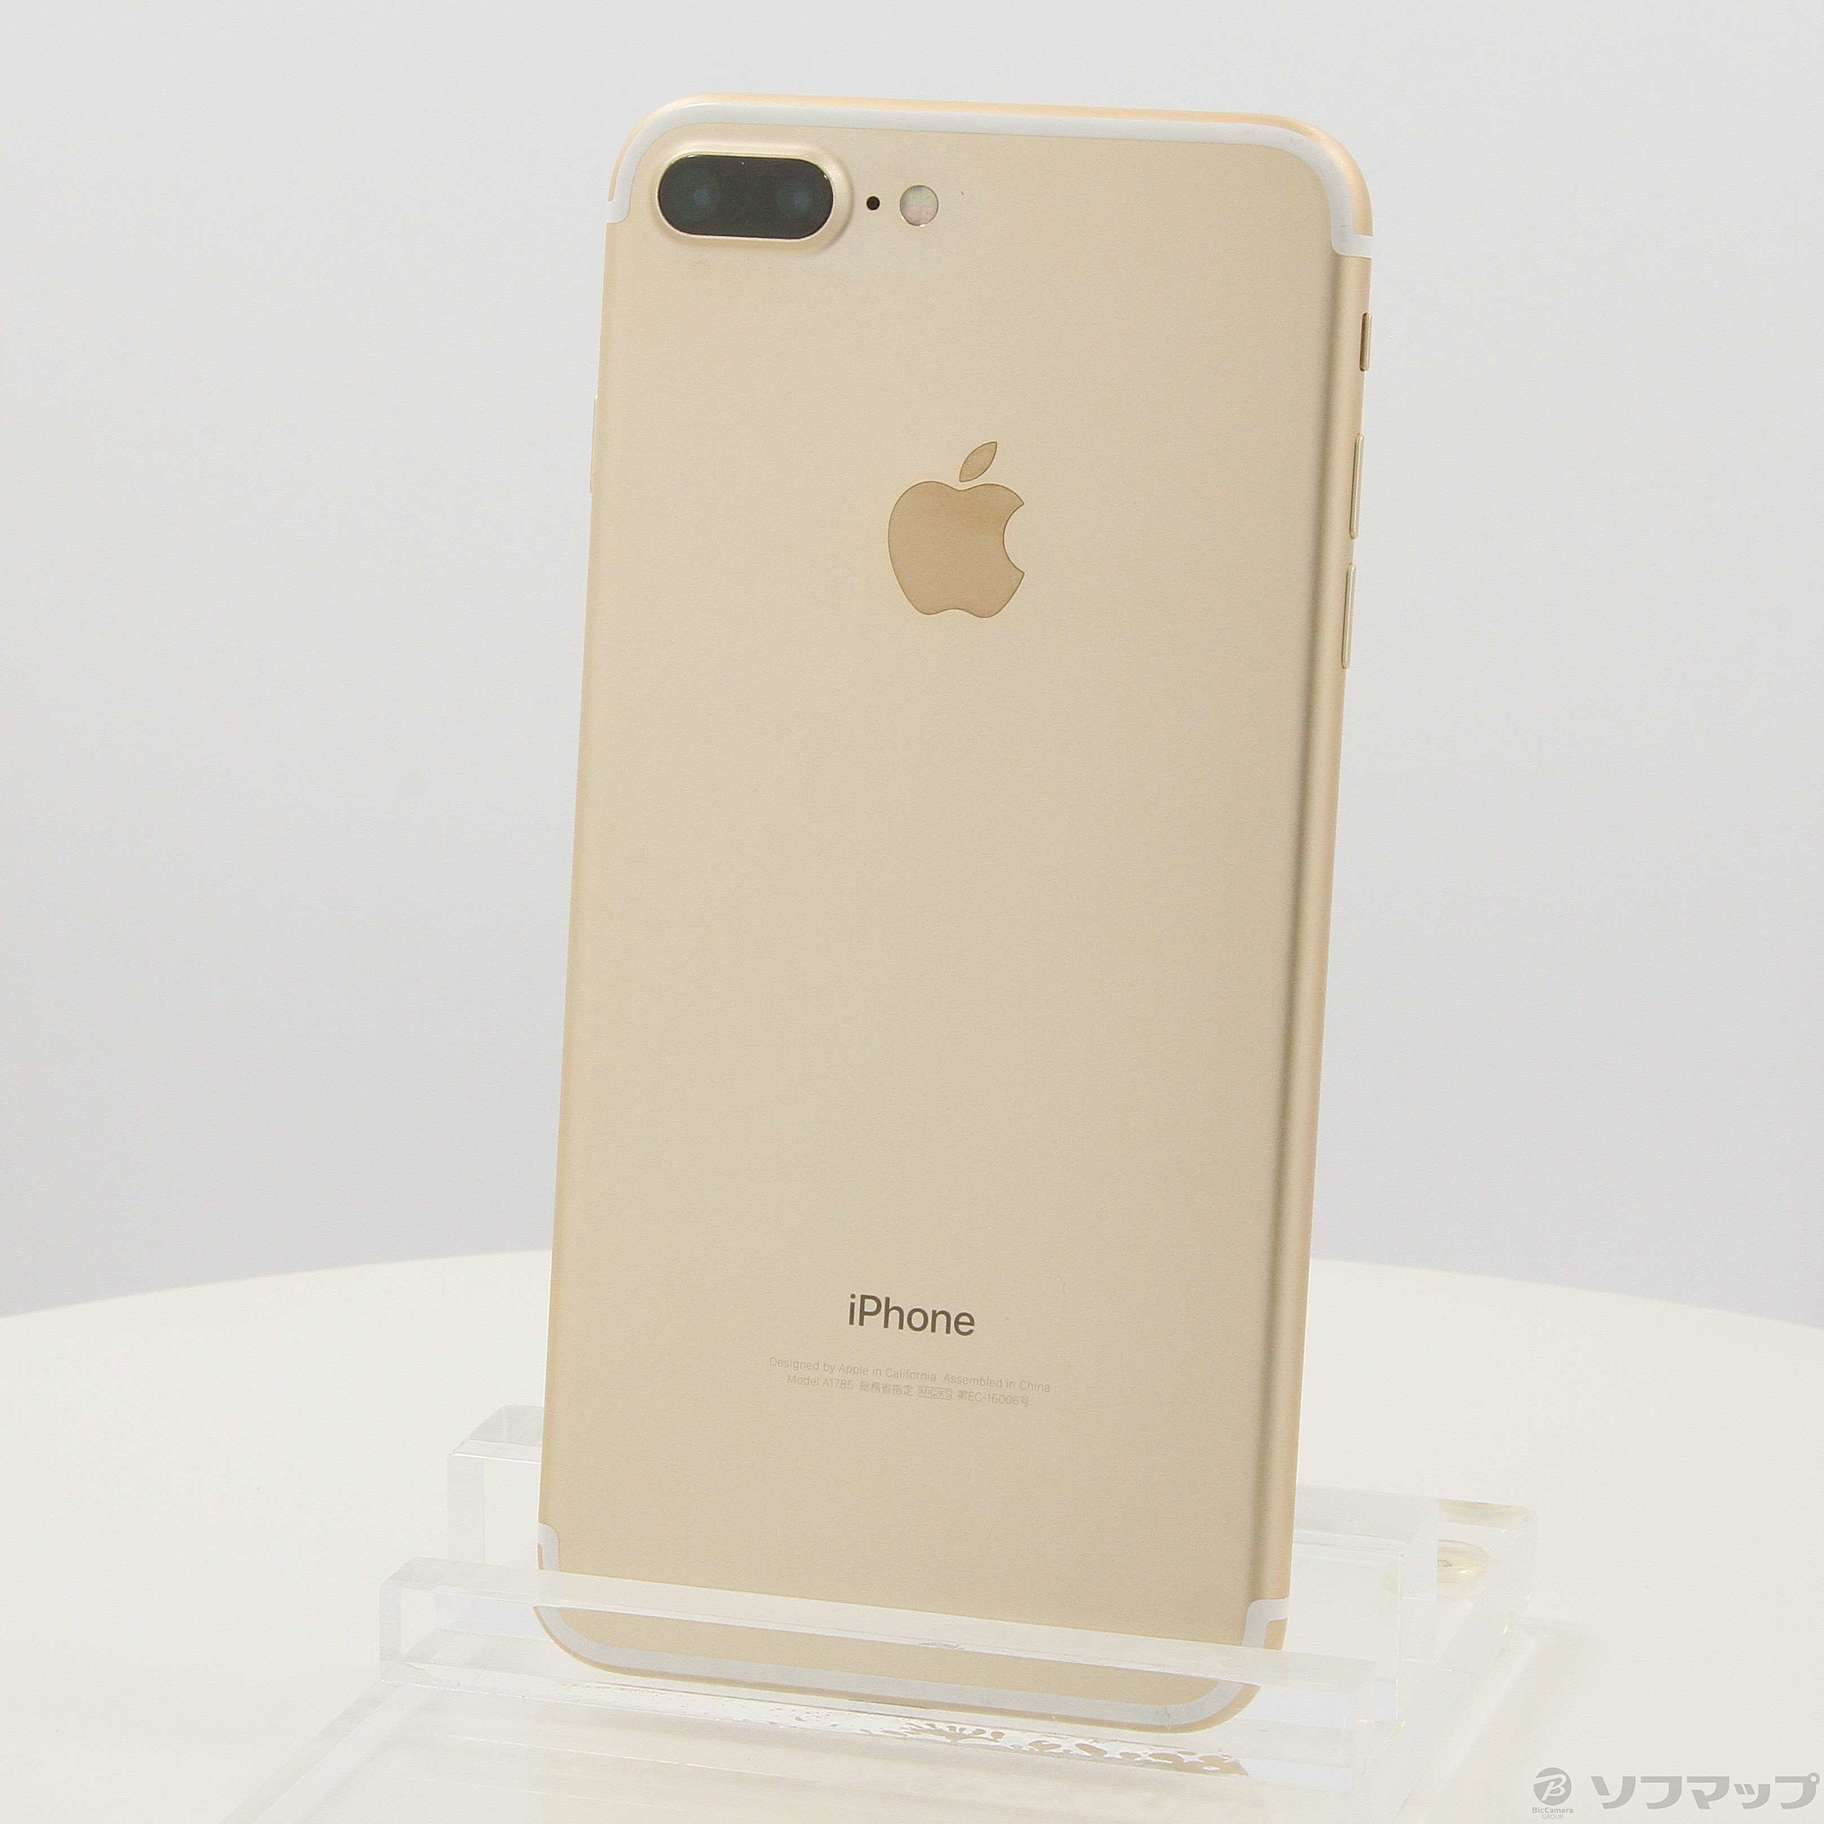 スマートフォン/携帯電話iPhone 7 Plus Gold 128GB SIMフリー 